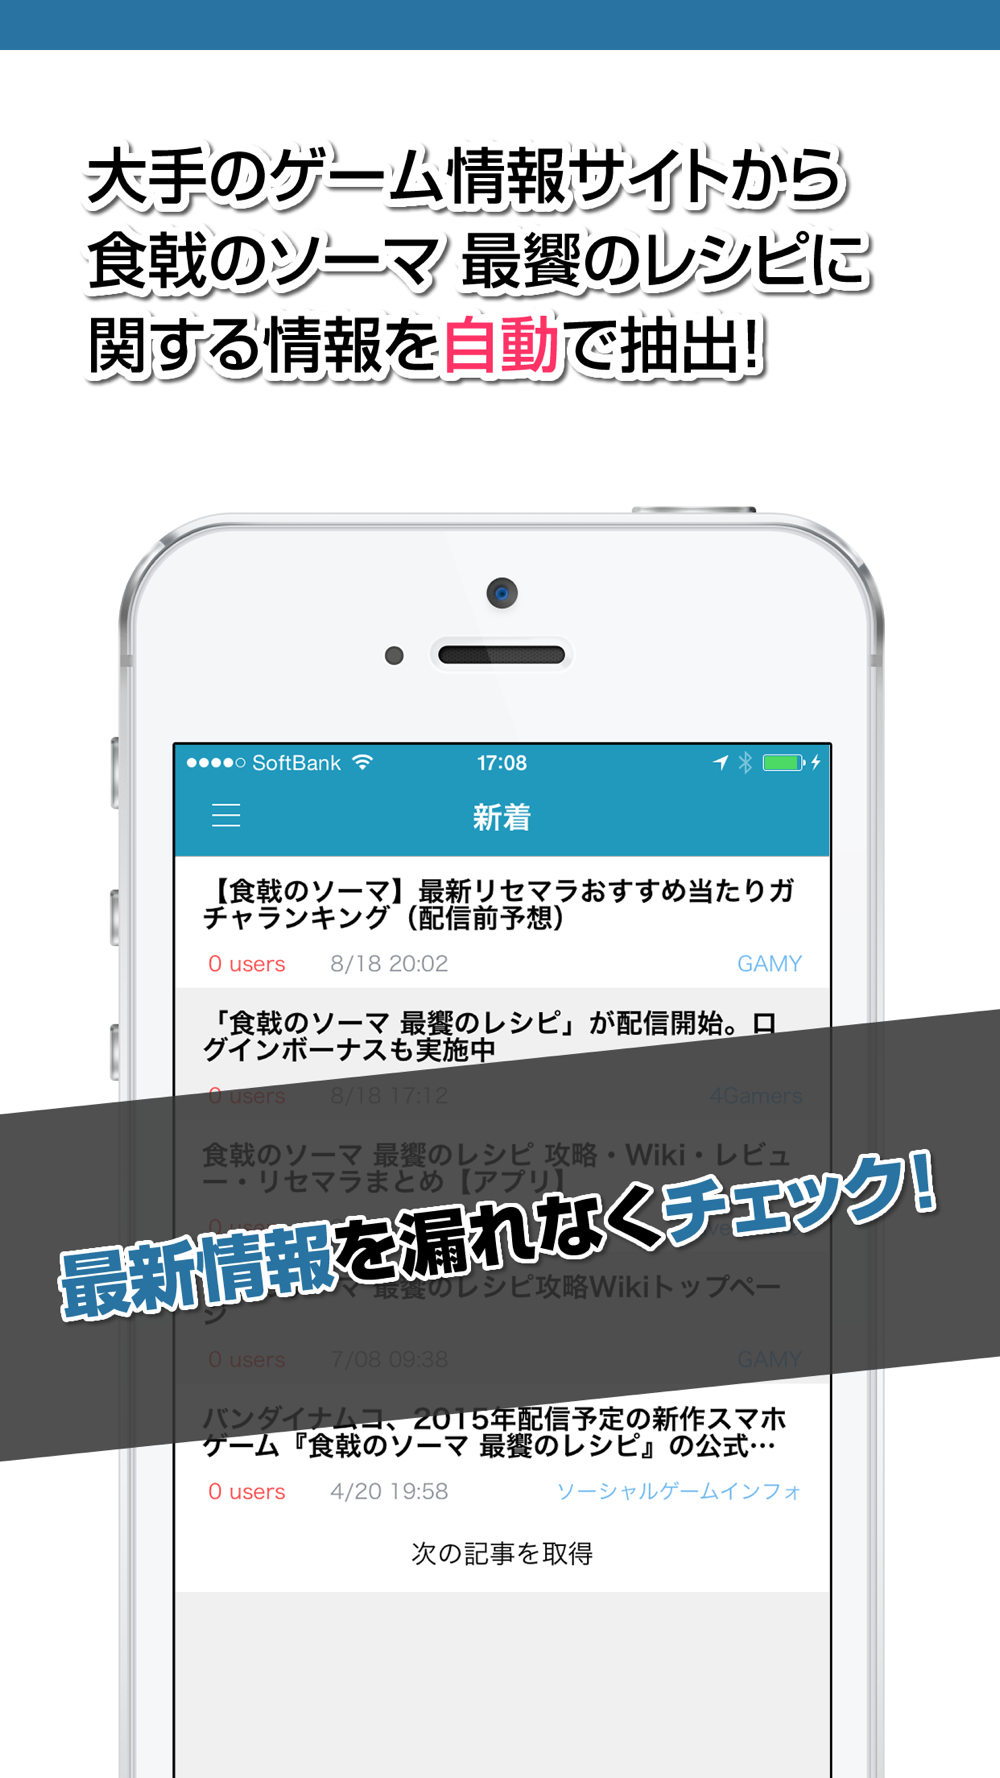 攻略ニュースまとめ速報 For 食戟のソーマ 最饗のレシピ Free Download App For Iphone Steprimo Com